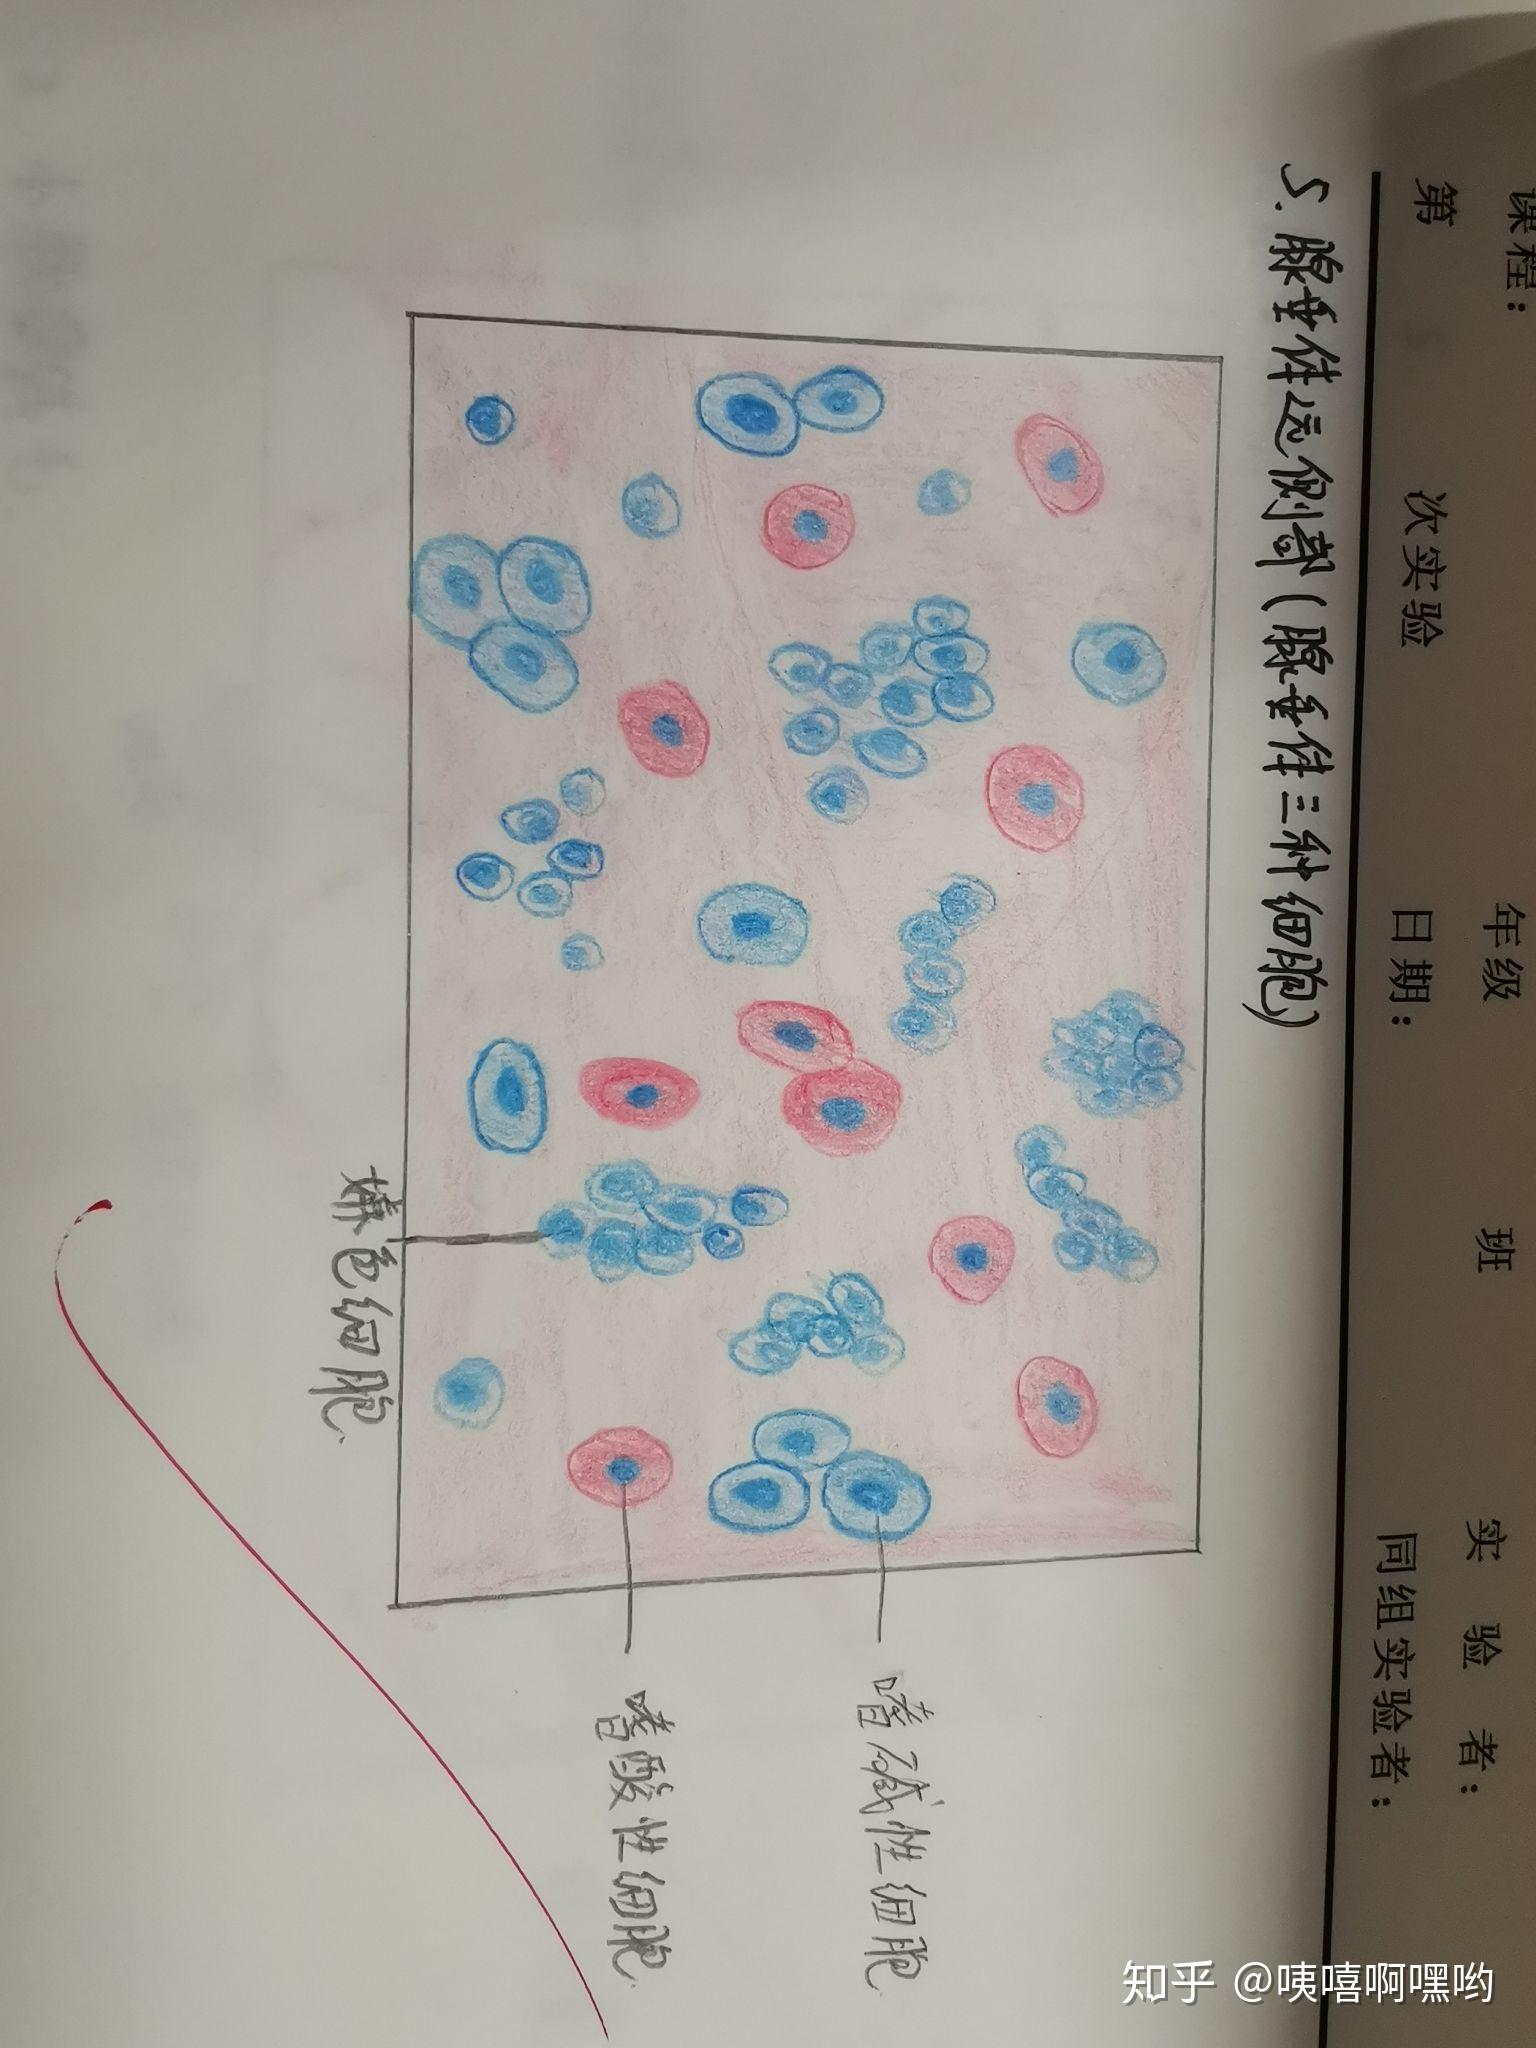 巨噬细胞手绘图片